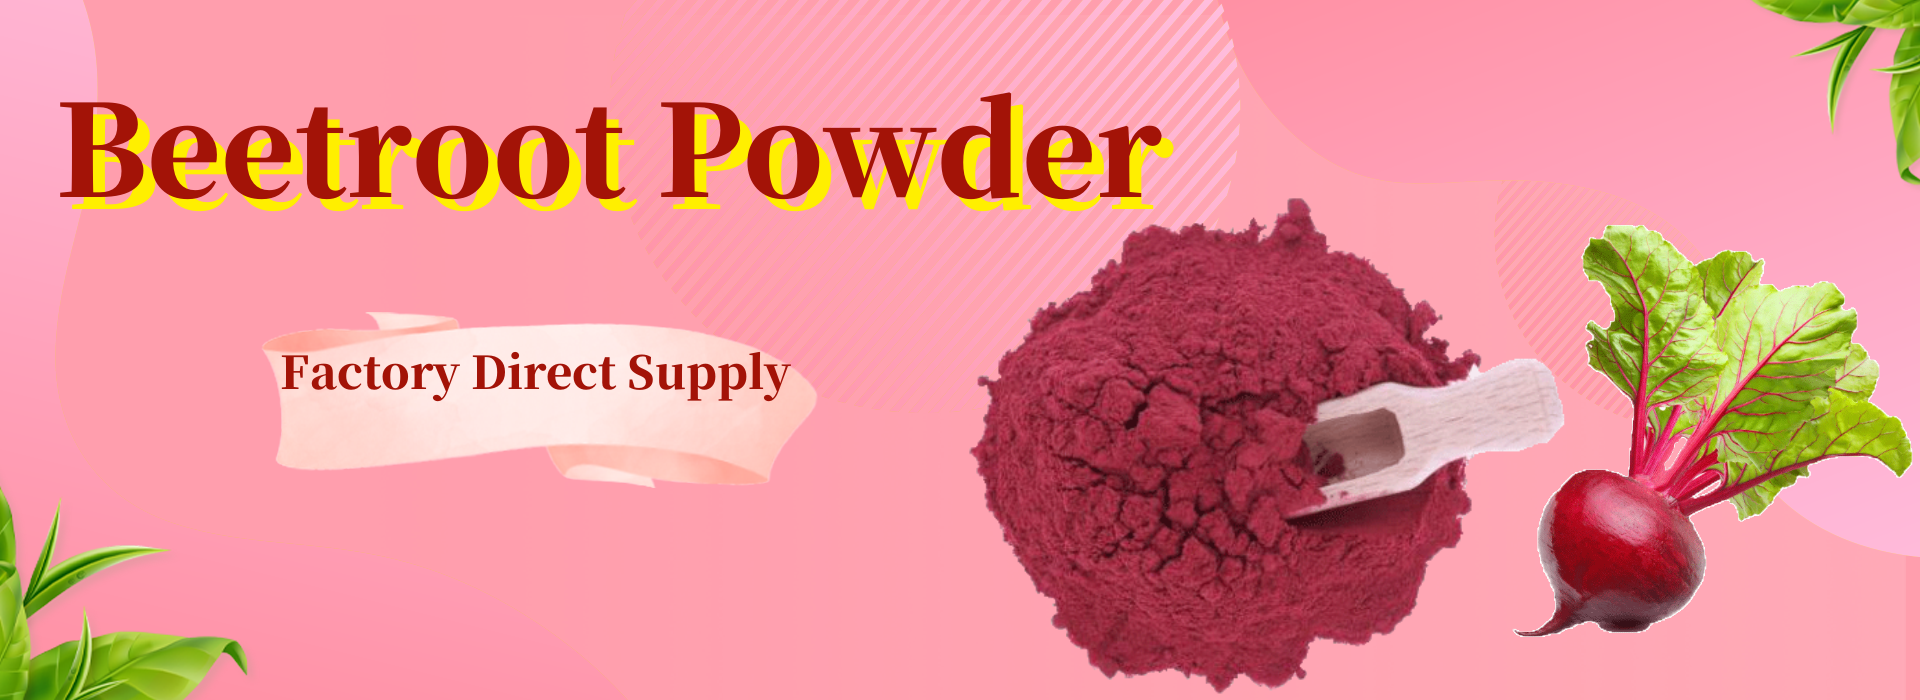 Beetroot Powder (2)